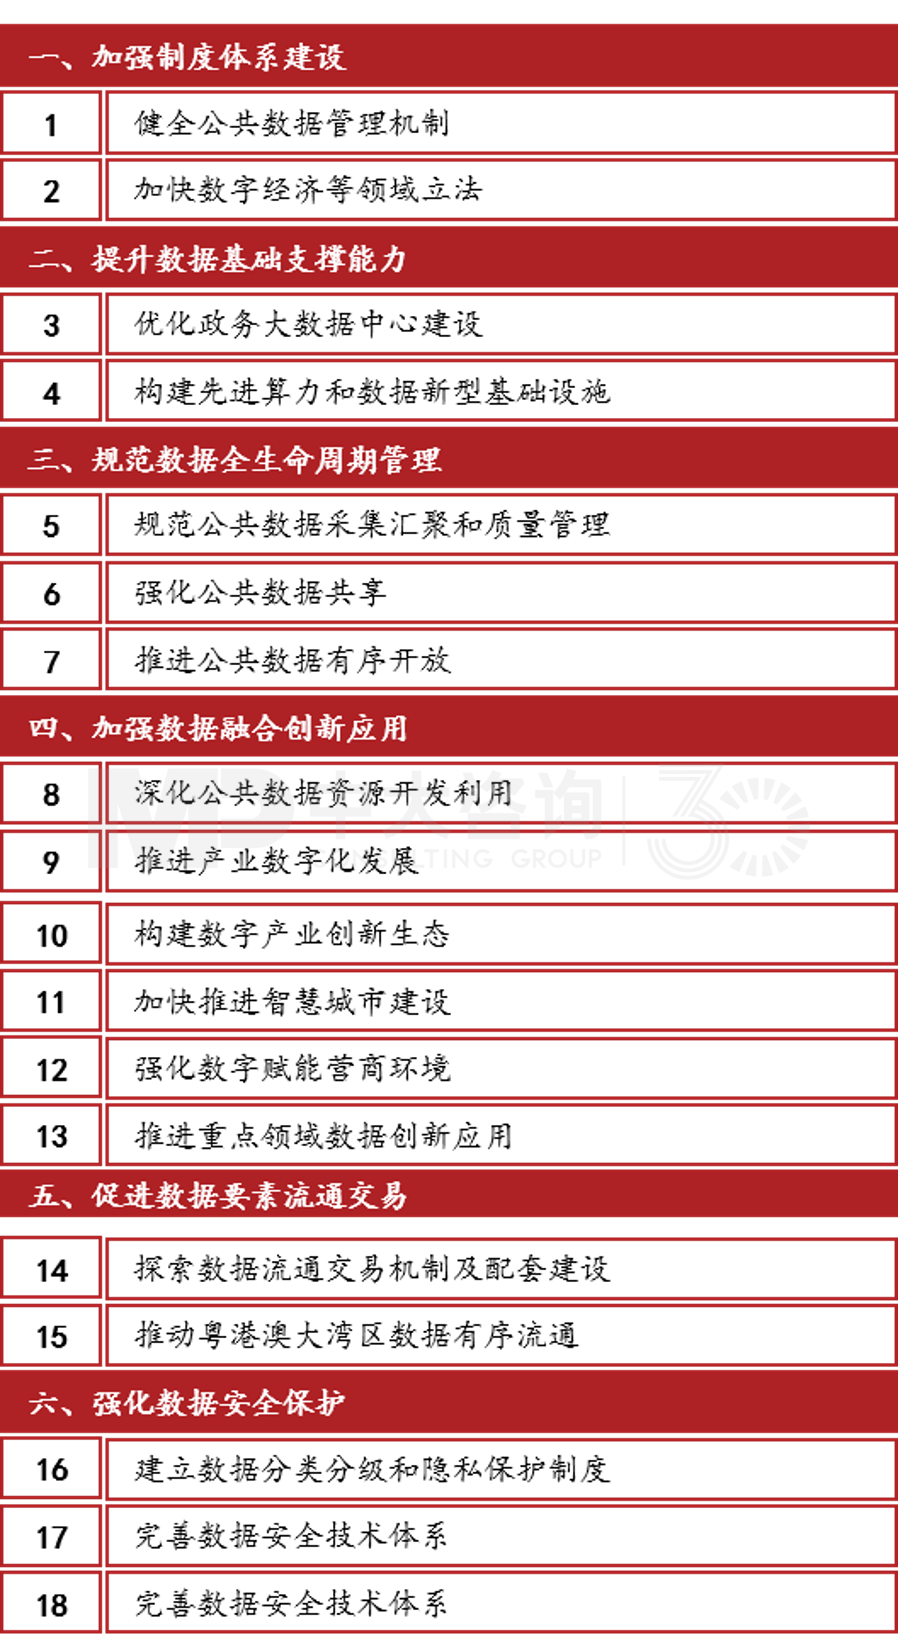 《广州市数据要素市场化配置改革行动方案》六大方面18项工作任务，中大咨询整理